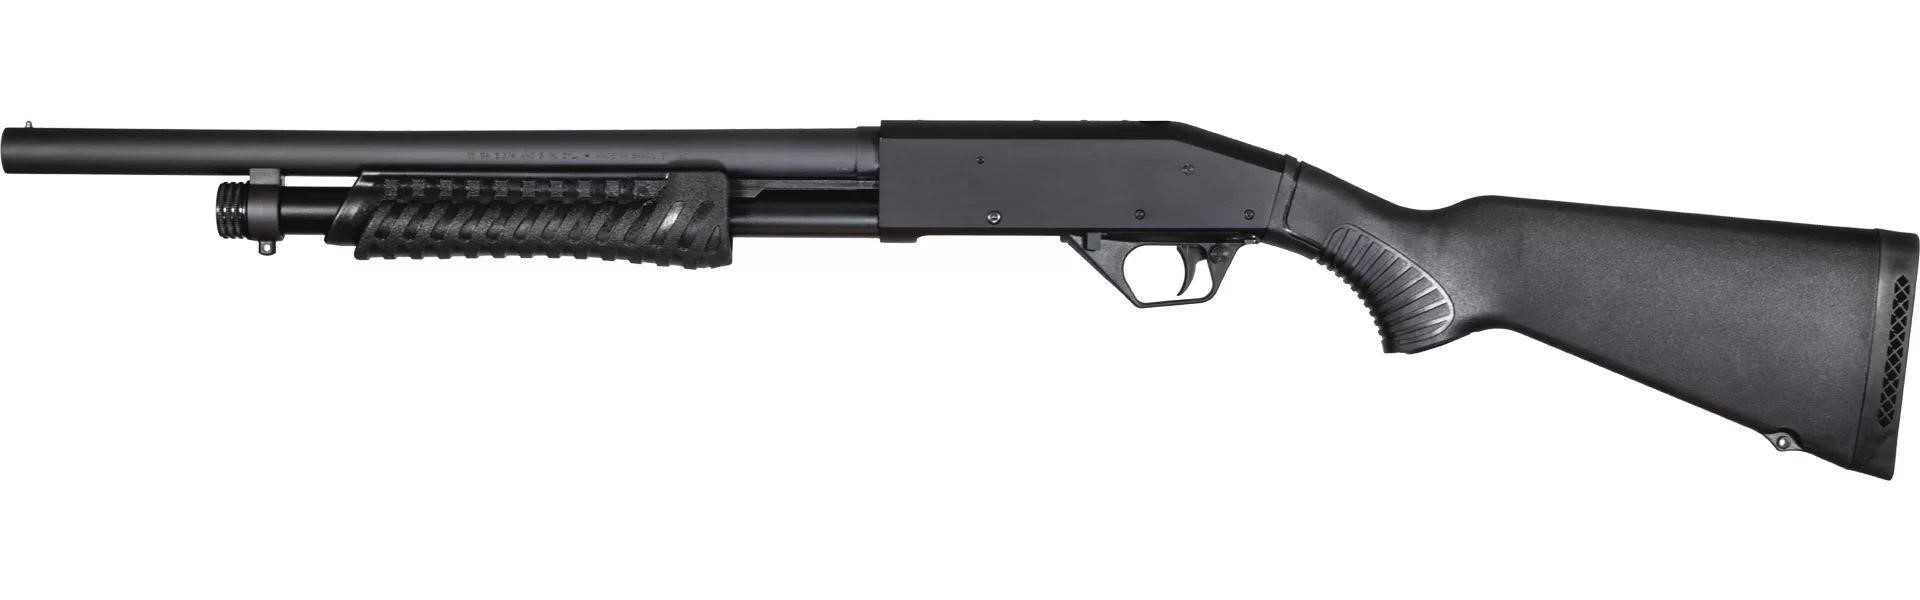 Rossi ST12 3” Pump Action Shotgun